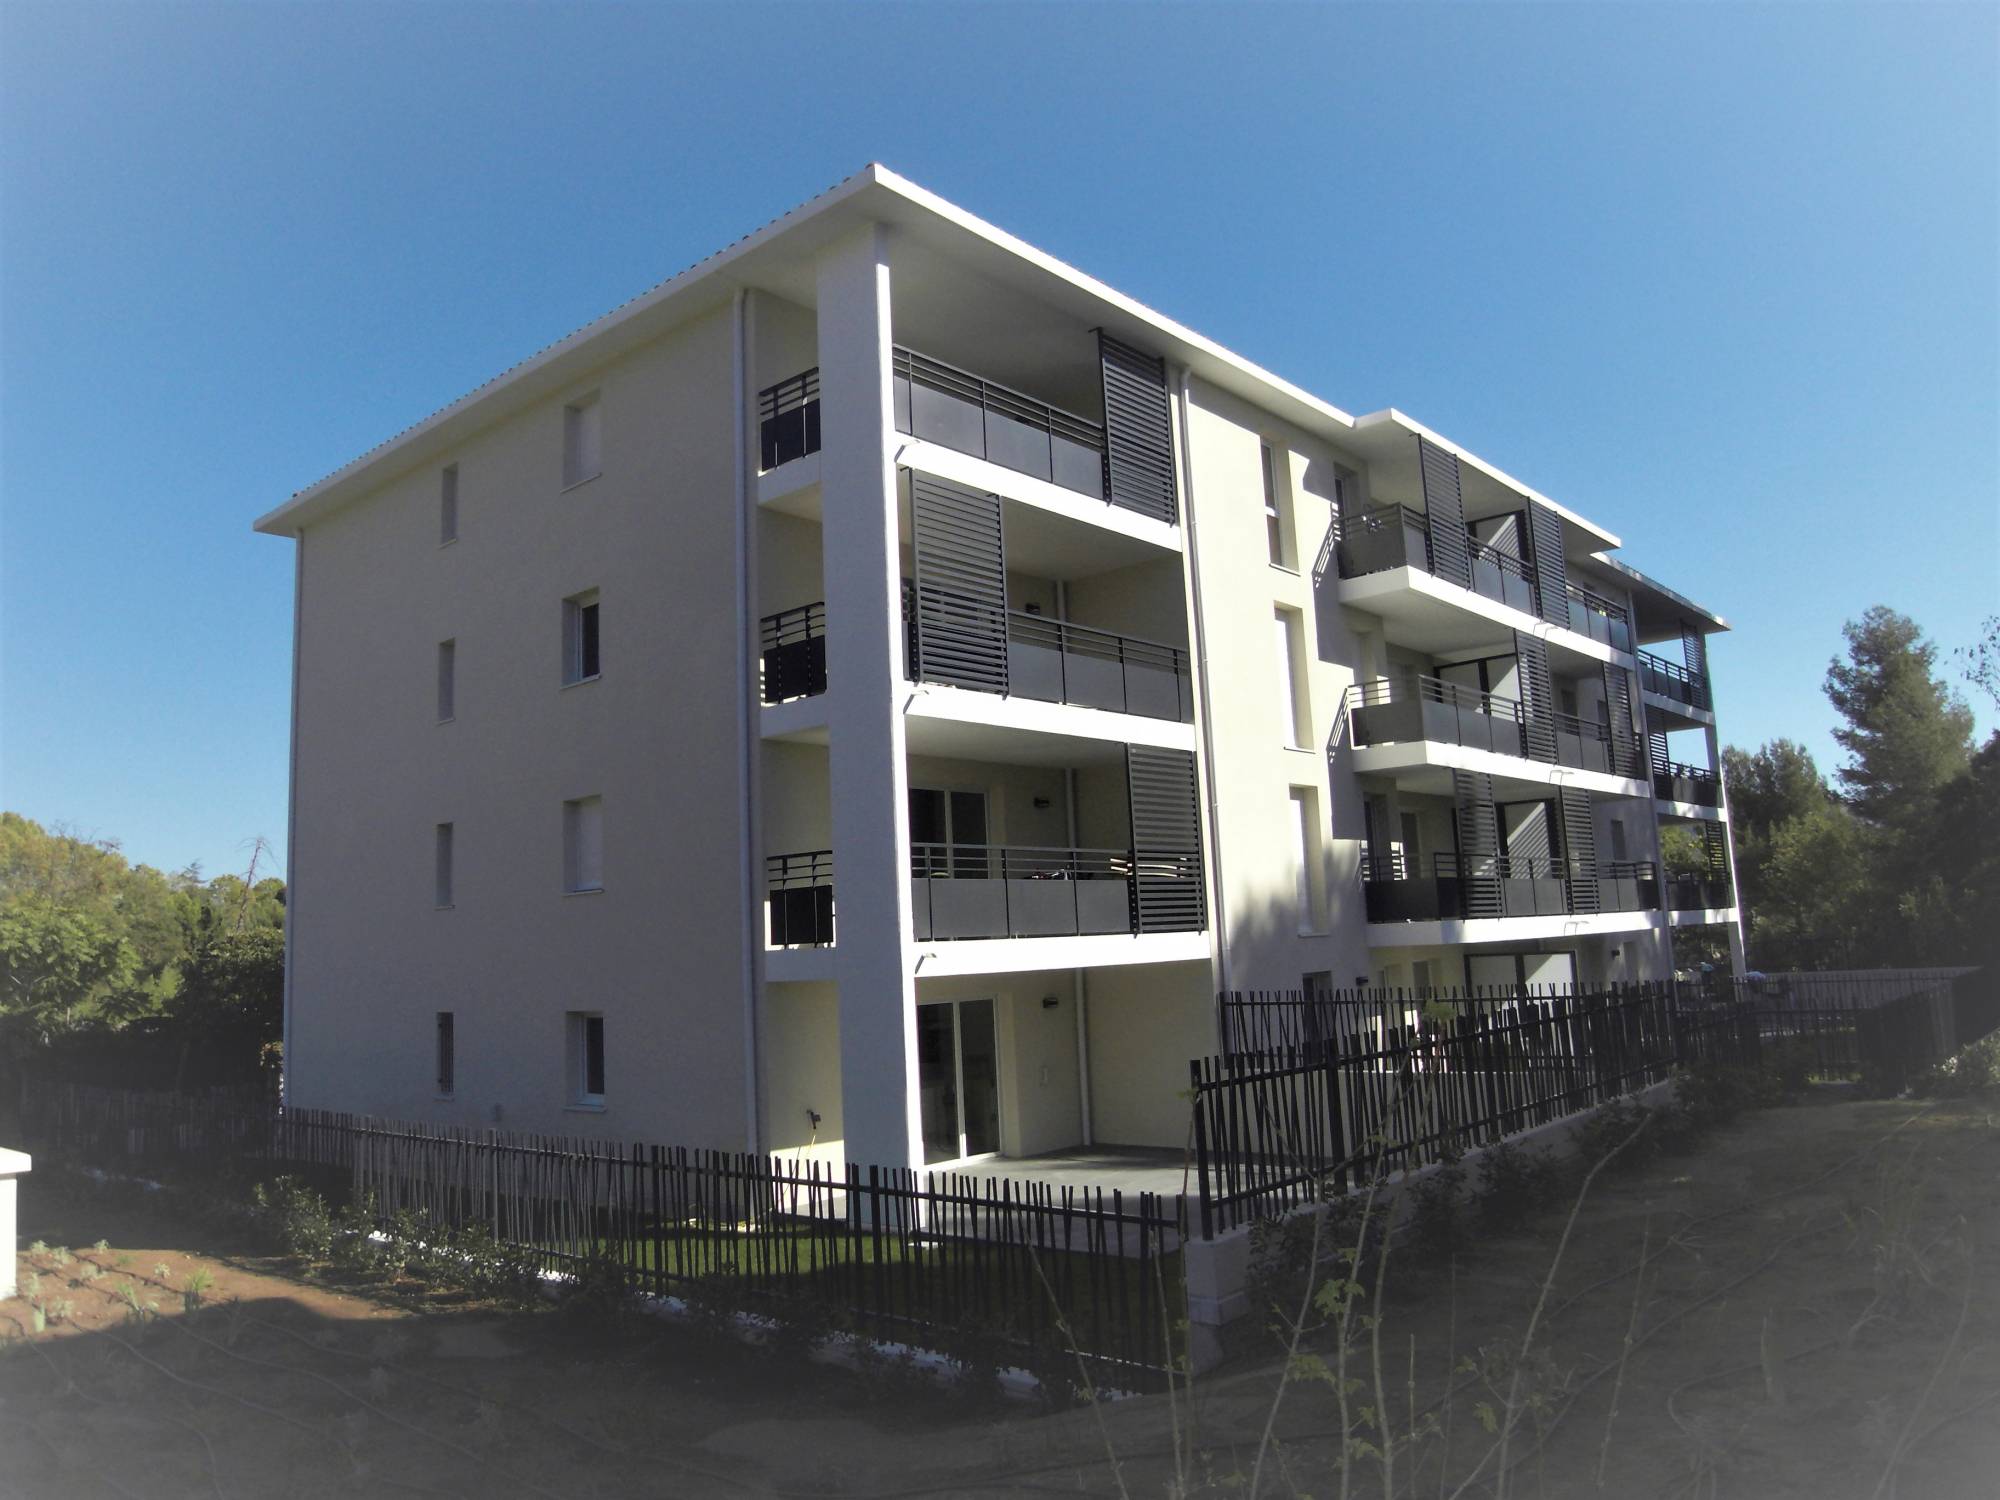 les accates A louer Appartement 3 pièces avec terrasse + garage double Les accates 13011 Marseille